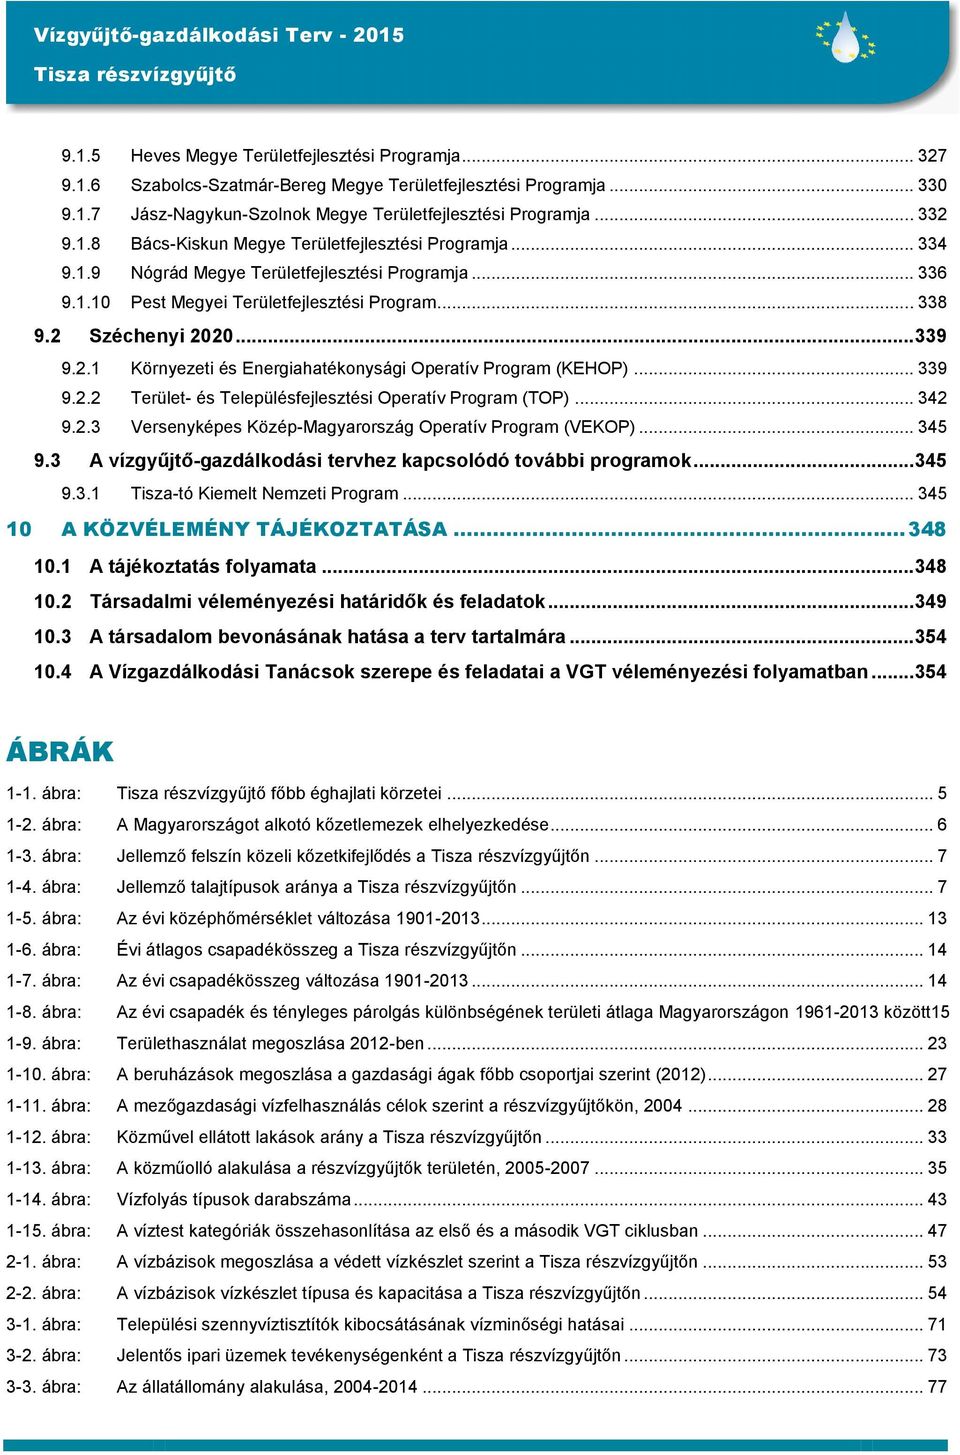 .. 339 9.2.2 Terület- és Településfejlesztési Operatív Program (TOP)... 342 9.2.3 Versenyképes Közép-Magyarország Operatív Program (VEKOP)... 345 9.